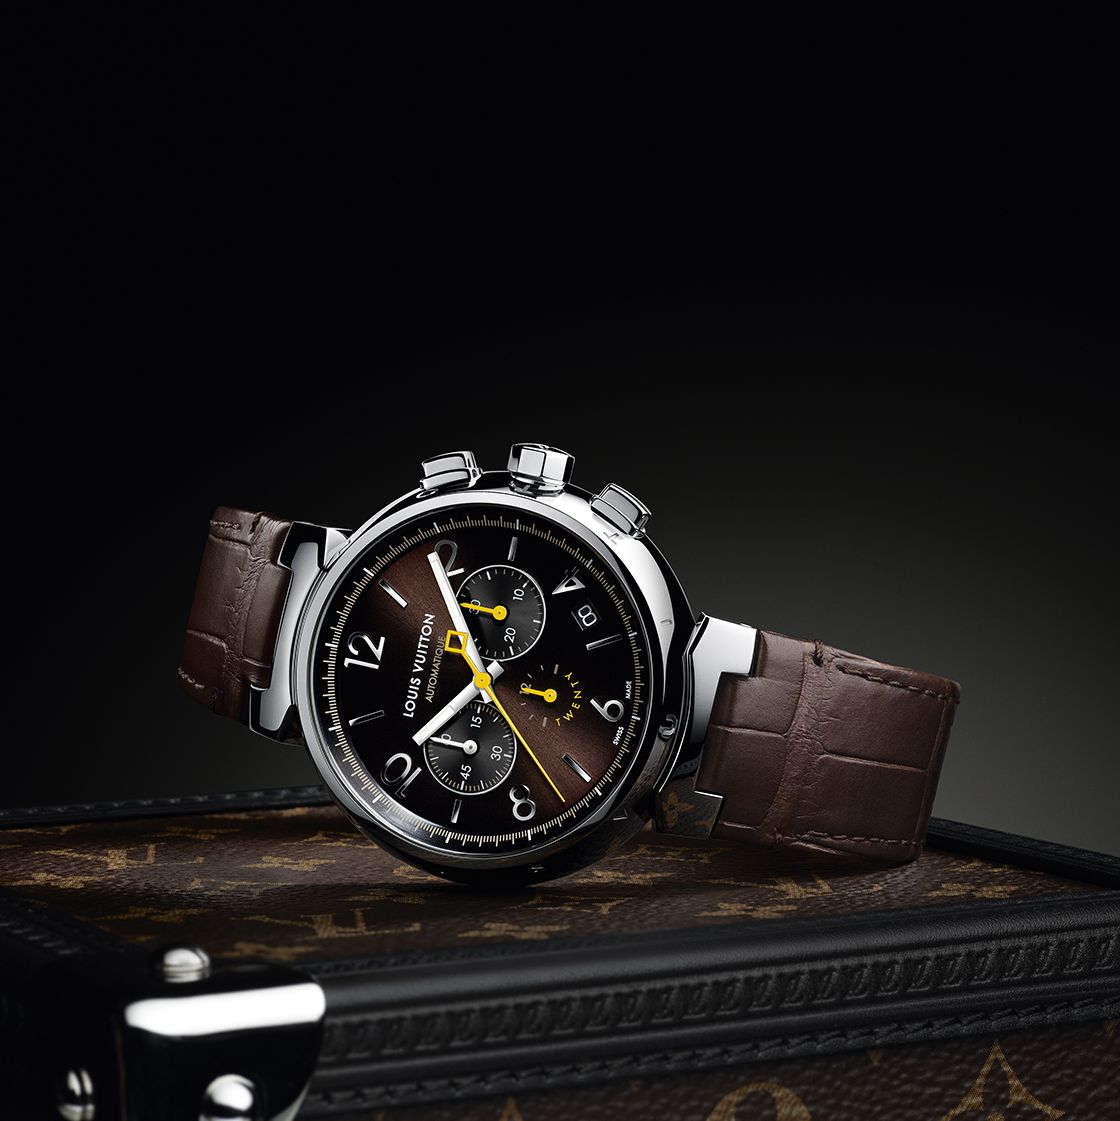 Bradley Cooper Wears Louis Vuitton's Sleek New Tambour Watch in